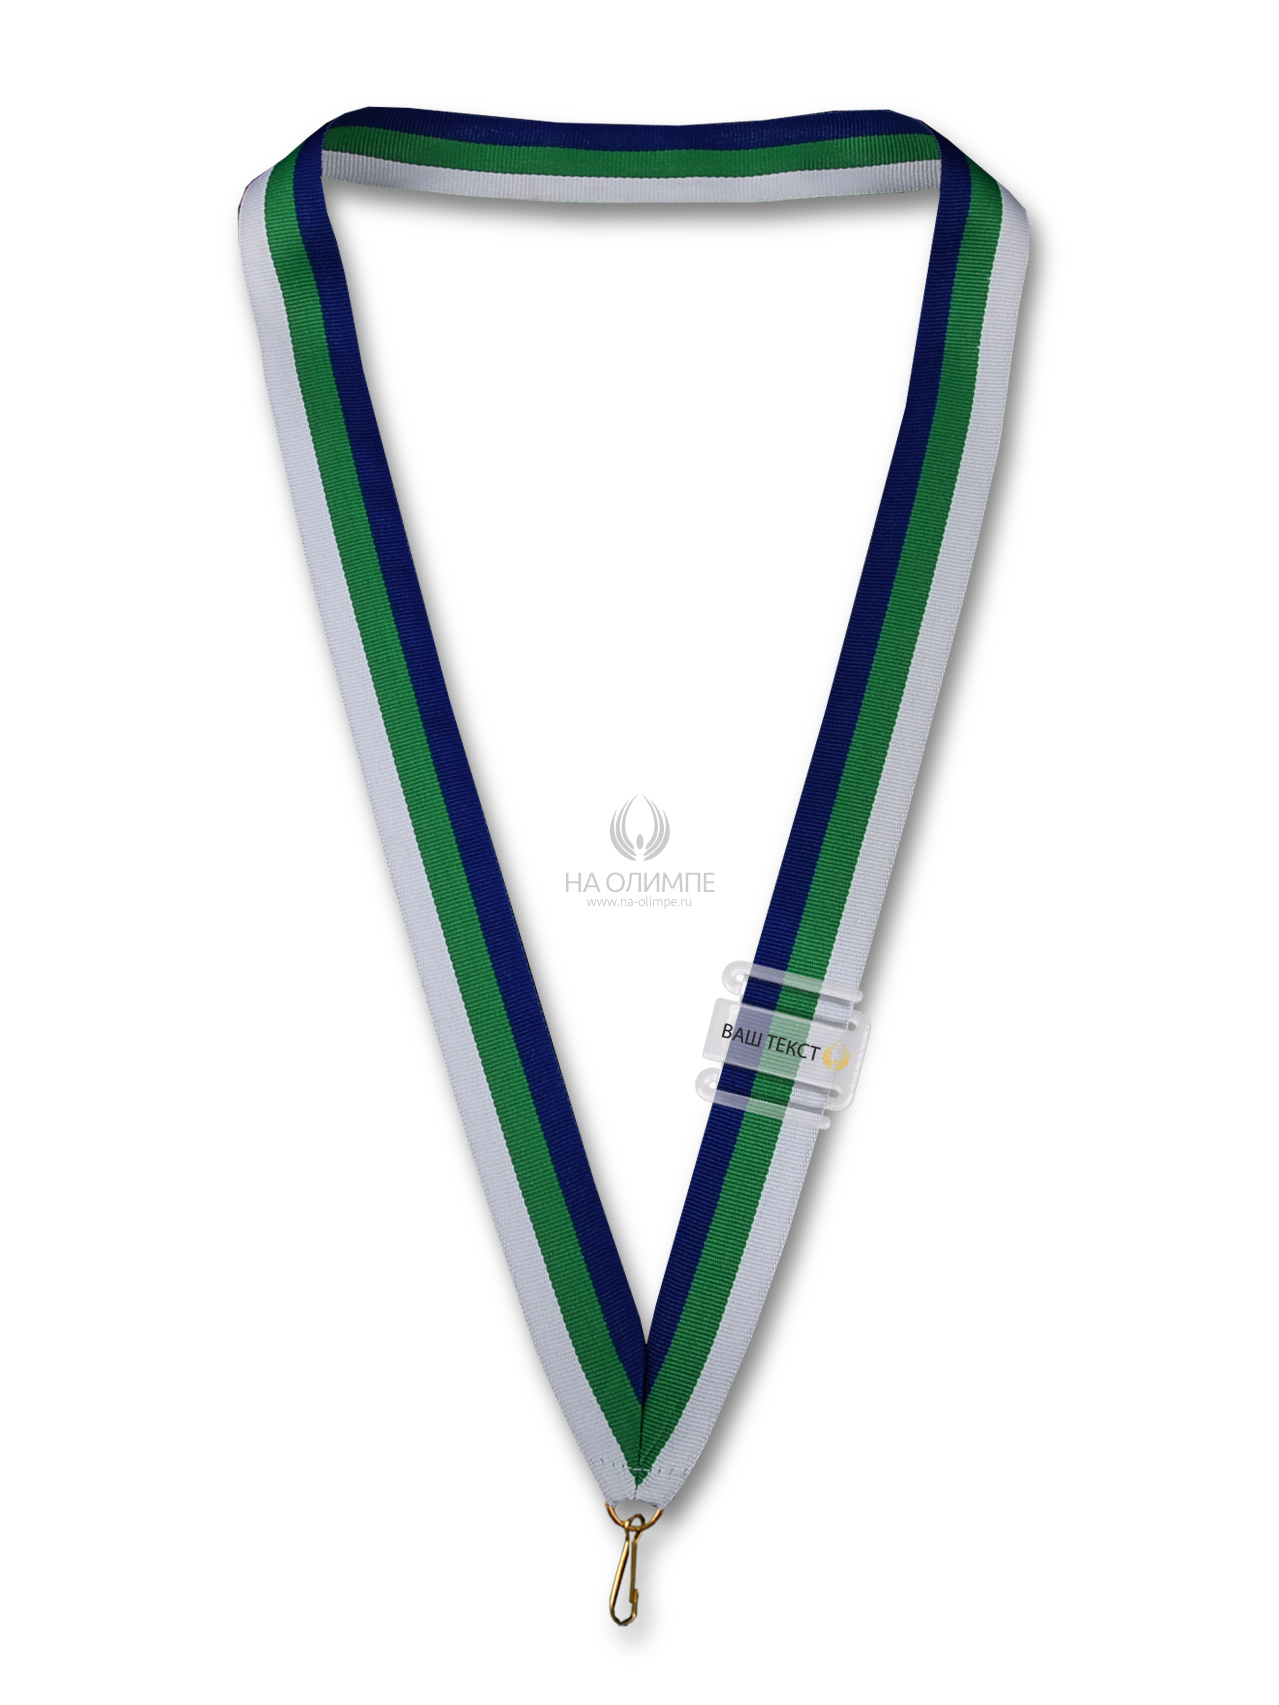 Лента для медали (Коми), ширина ленты 22 мм